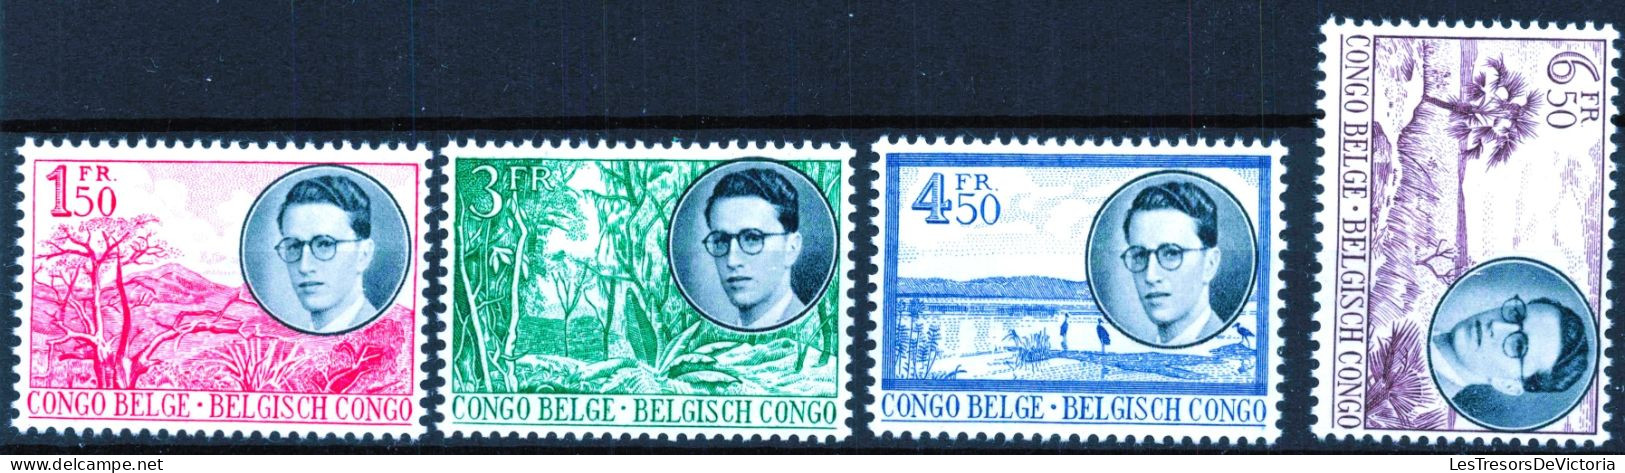 Timbre - Belgique - COB 329/36* -1955 - Voyage Royal Au Congo Predominance Néerlandaise Et Française - Cote 32 - Unused Stamps